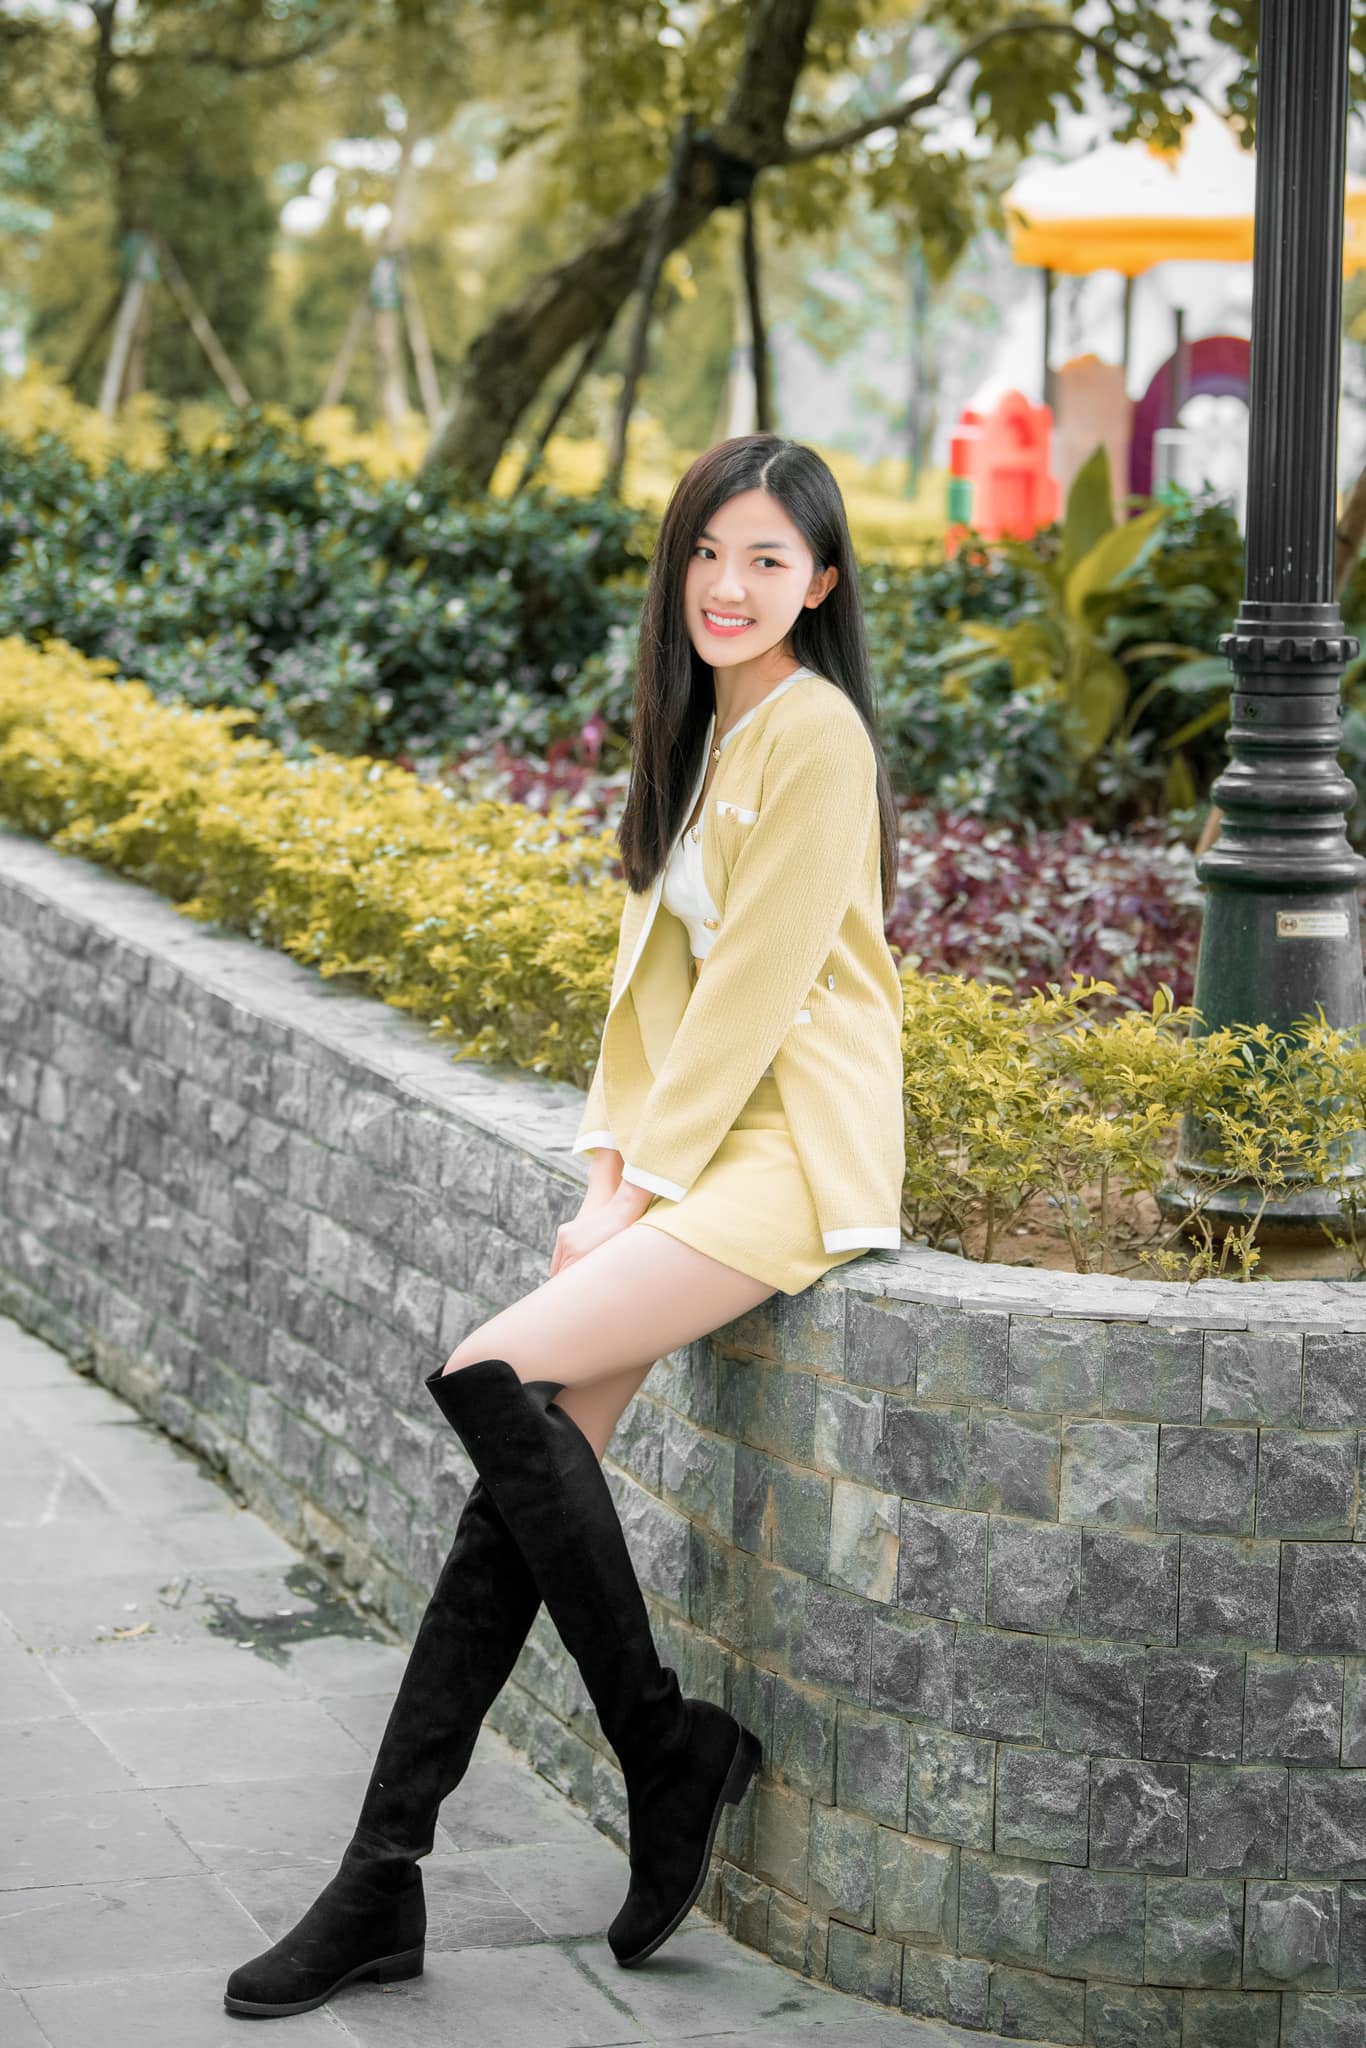 Nữ diễn viên quê Thanh Hóa mặt xinh, dáng đẹp cao hơn 1m70 chẳng thua kém hoa hậu - 8